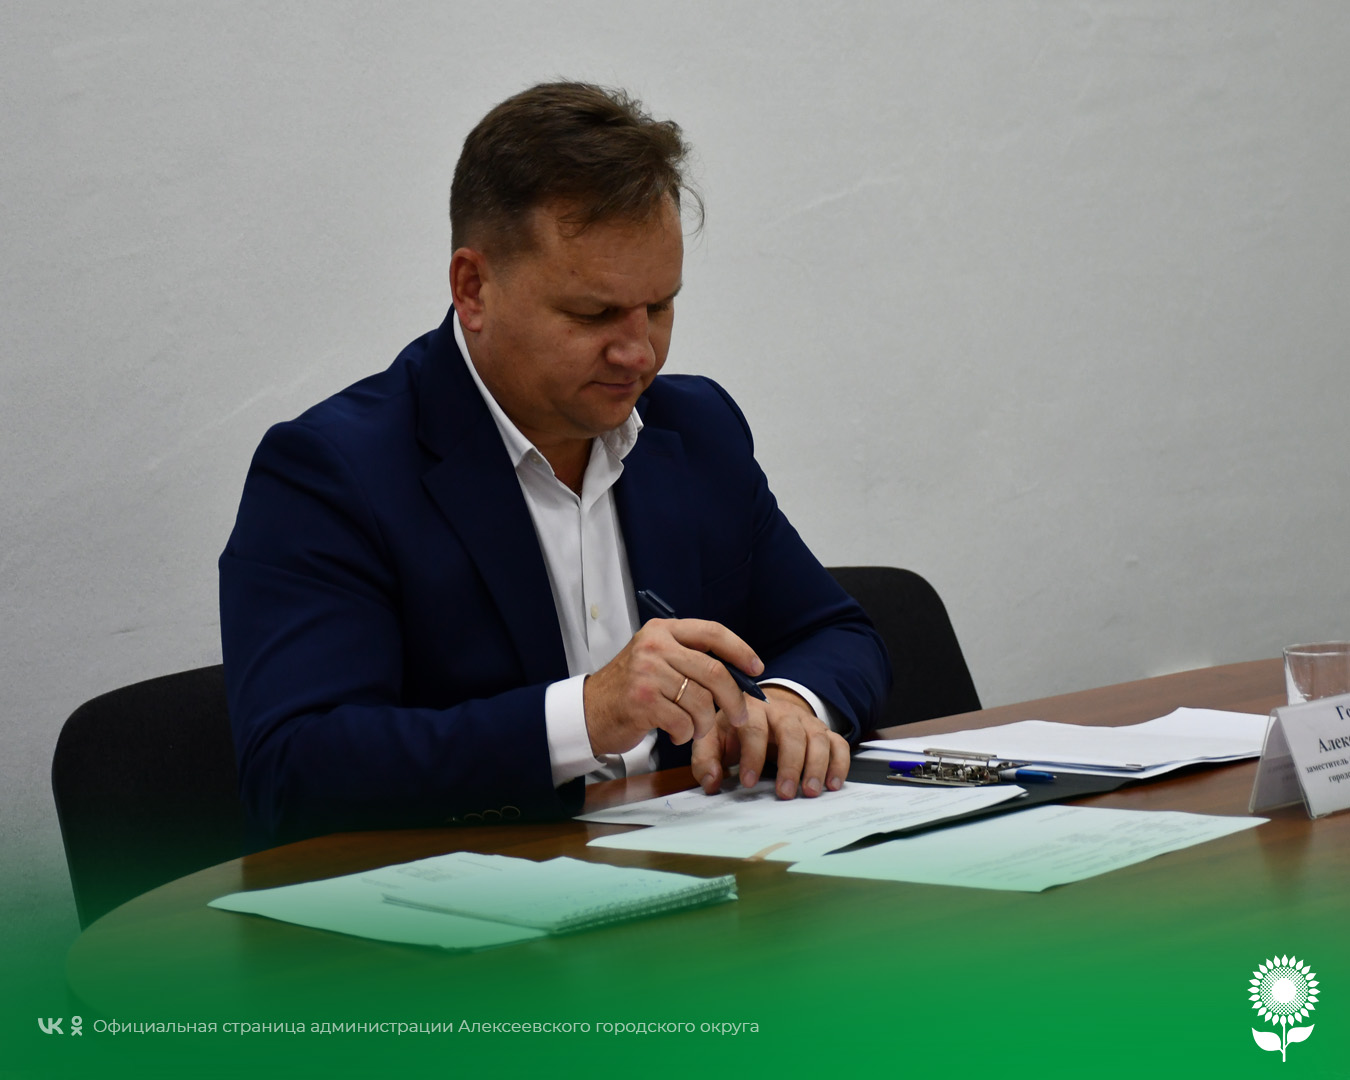 Сегодня временно исполняющий обязанности главы администрации Алексеевского городского округа Алексей Федорович Горбатенко провёл приём граждан по личным вопросам